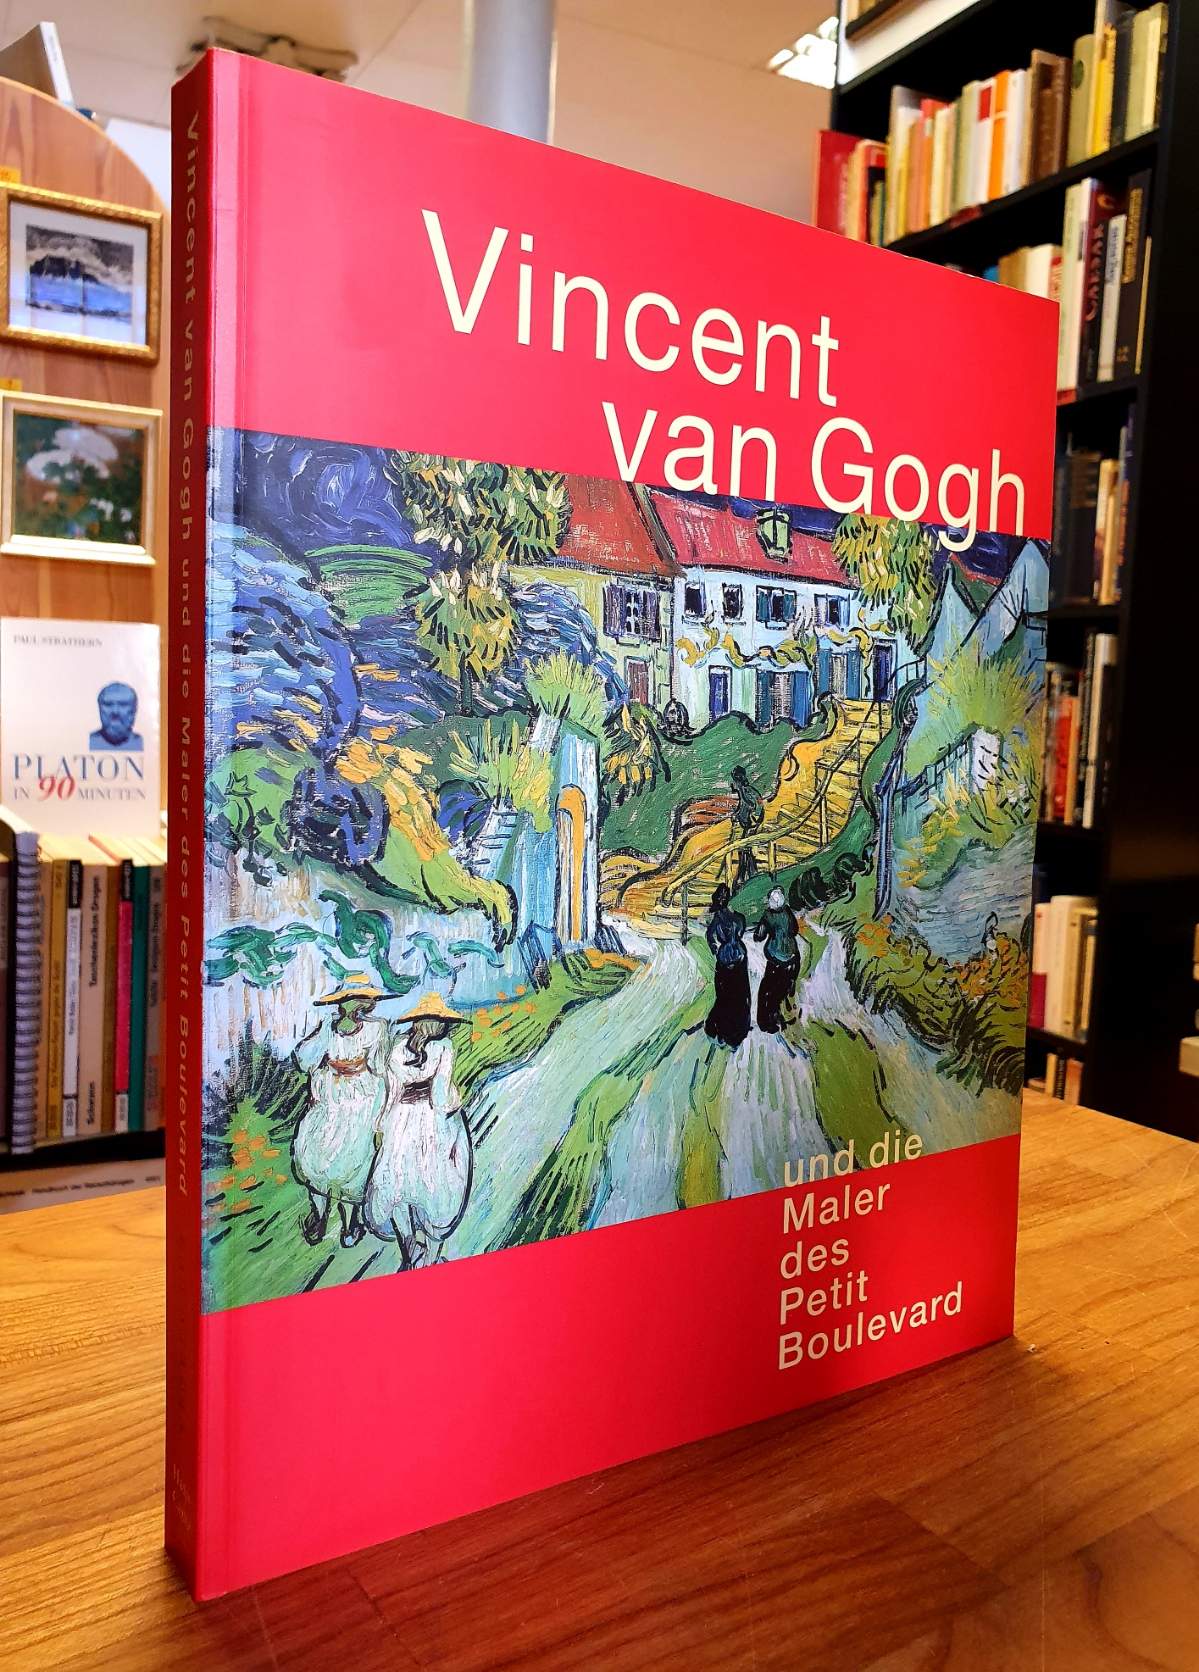 Vincent van Gogh und die Maler des Petit Boulevard,